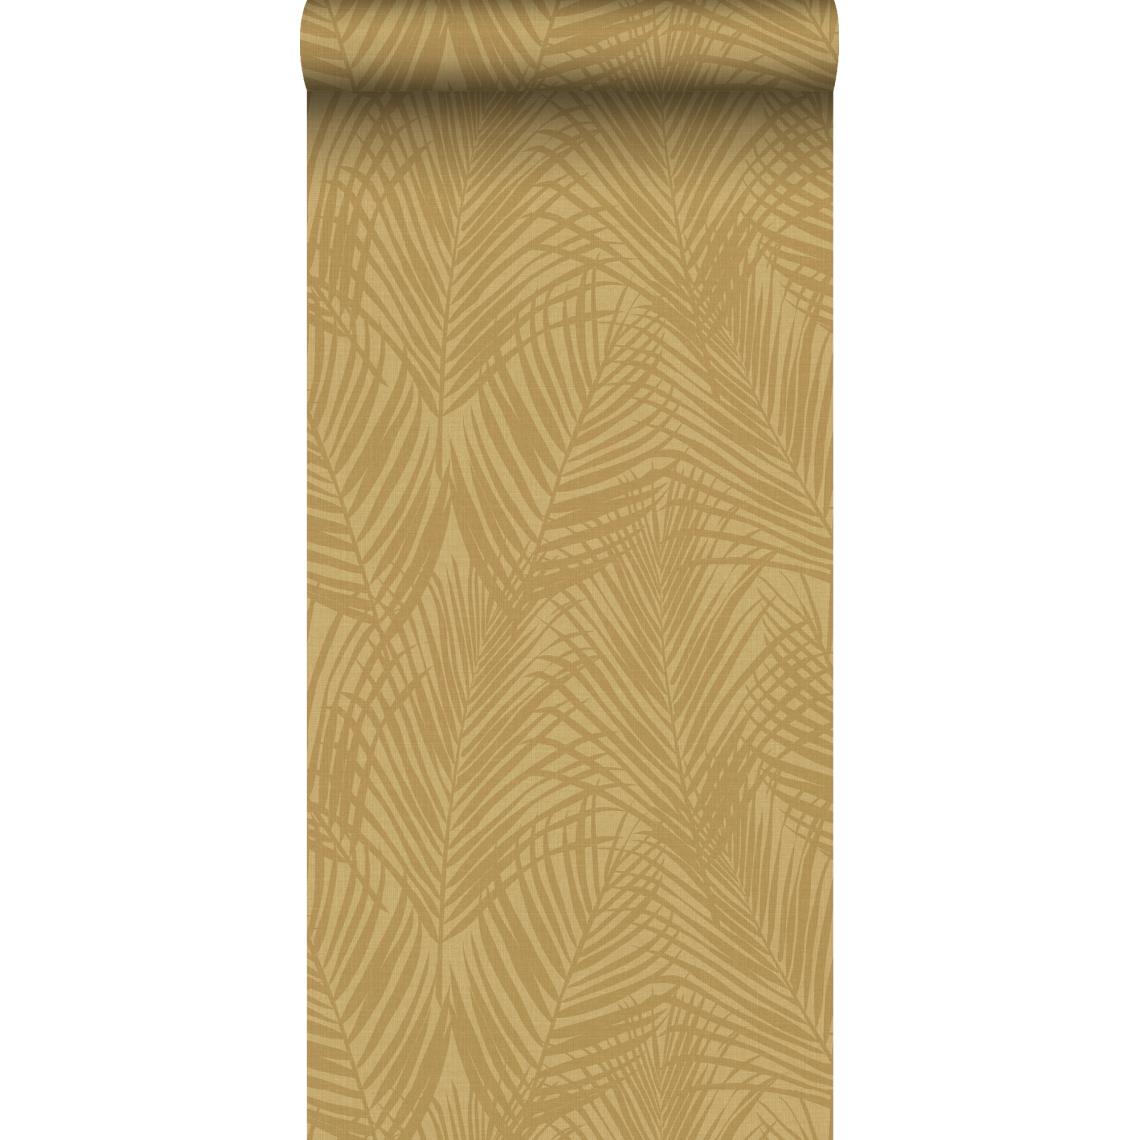 Origin - Origin papier peint feuilles de palmier jaune ocre - 347807 - 53 cm x 10,05 m - Papier peint